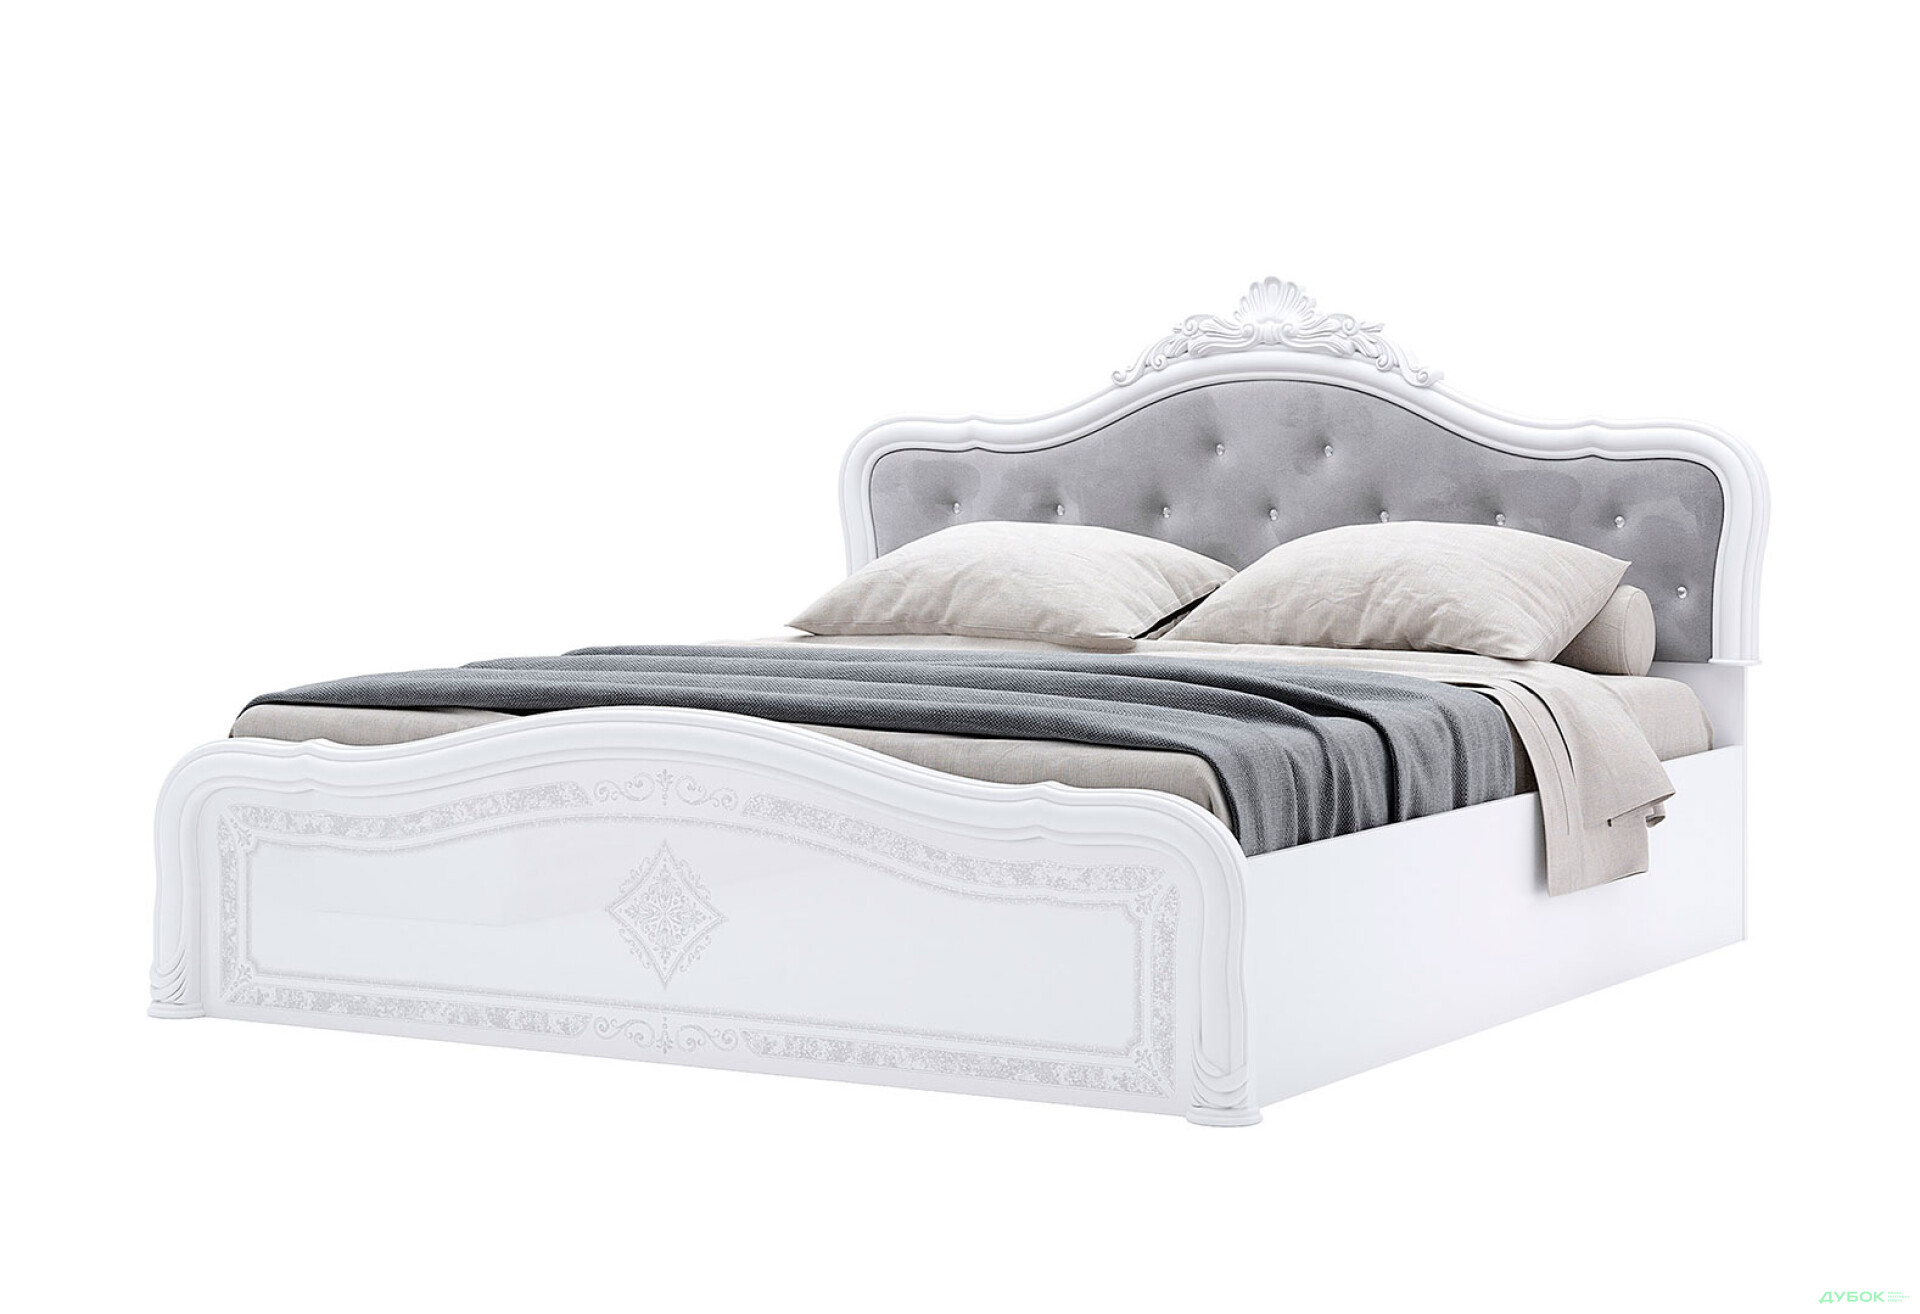 Фото 1 - Кровать MiroMark Луиза Люкс 160х200 см подъемное с короной, белая